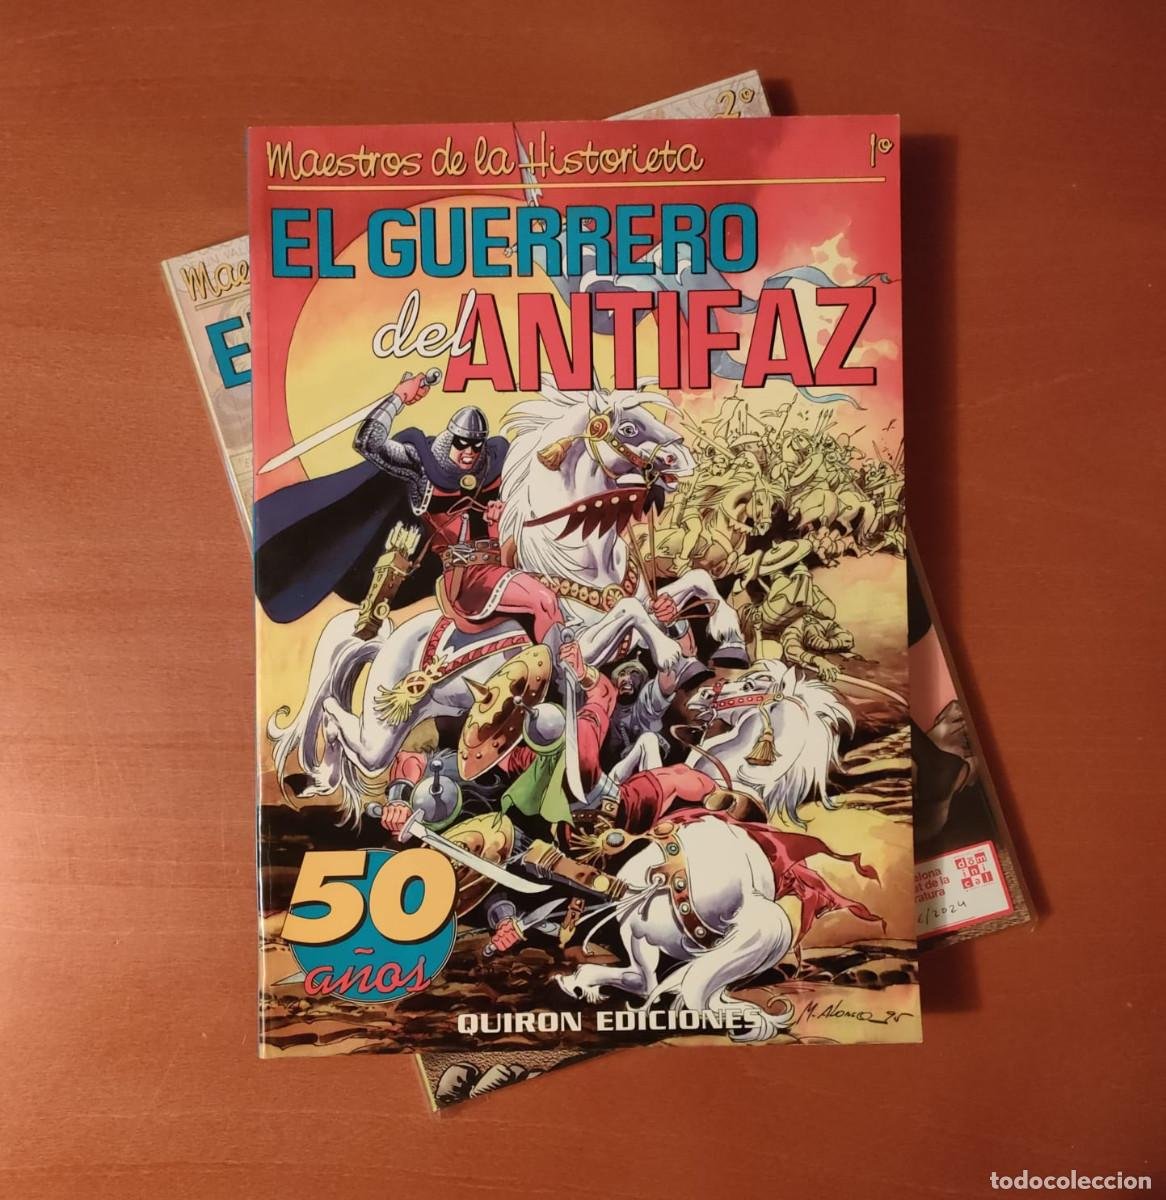 Lote 460517067: MAESTROS DE LA HISTORIETA Quirón Ediciones COMPLETA 2 Nº. EL GUERRERO DEL ANTIFAZ